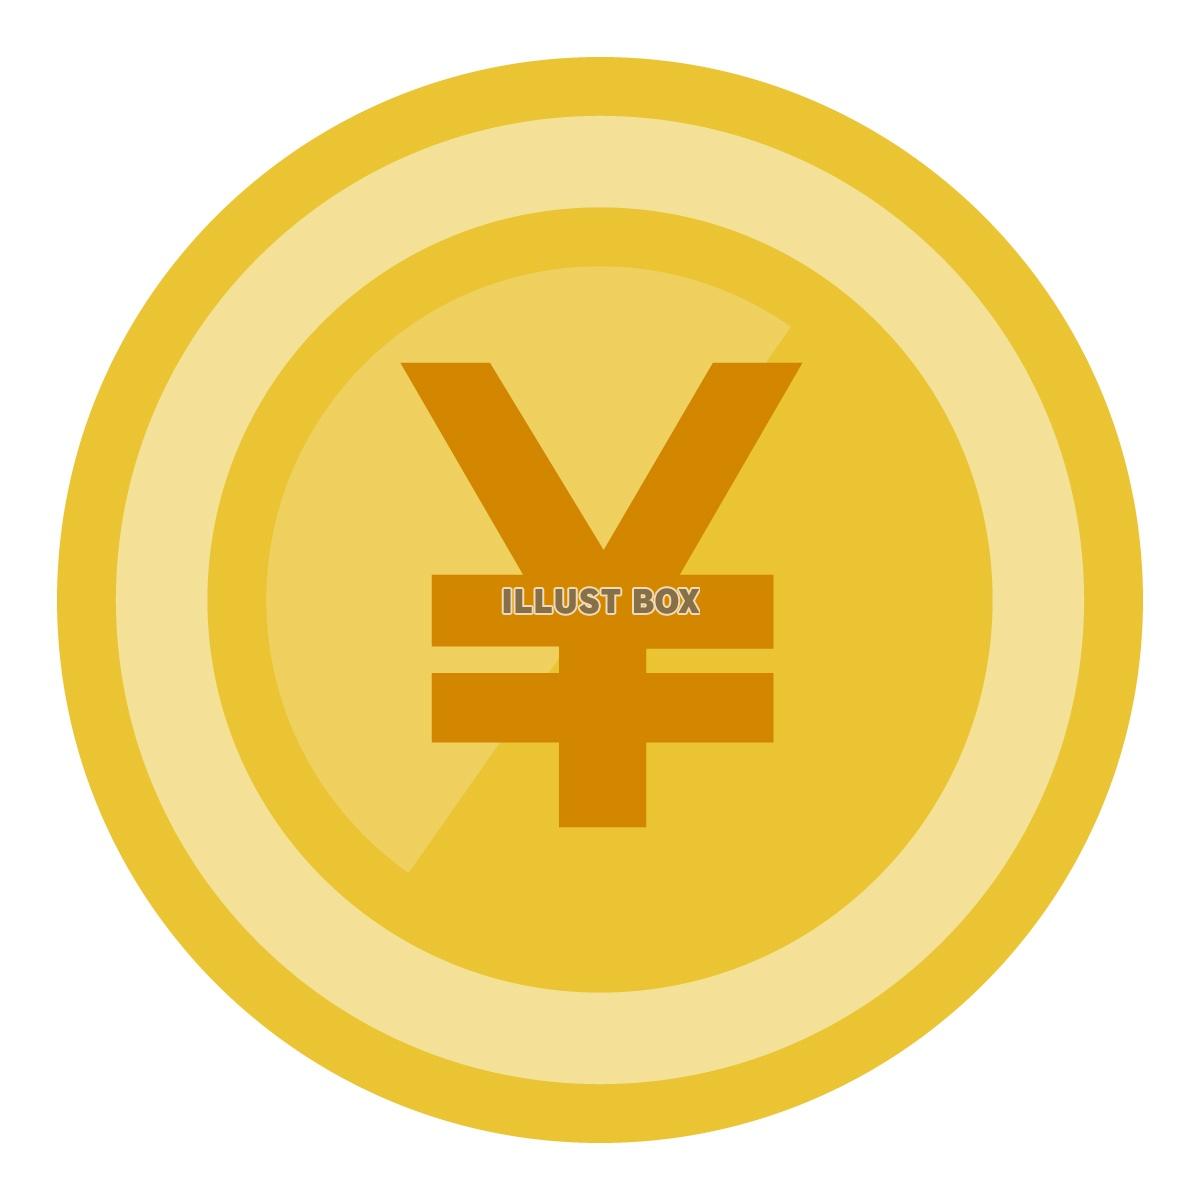 円マークの描かれたコインのイラスト素材